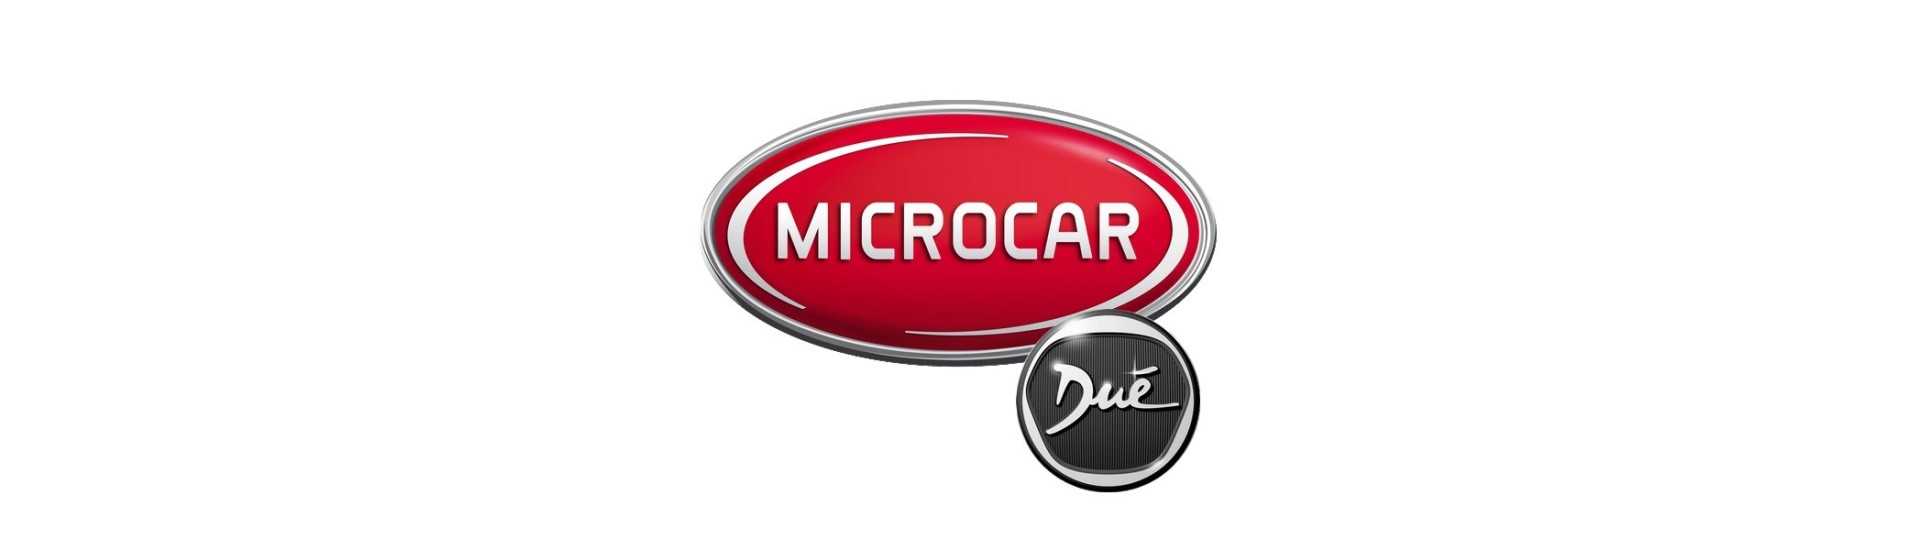 Brysselskydd på bästa pris utan körkort Microcar Dué